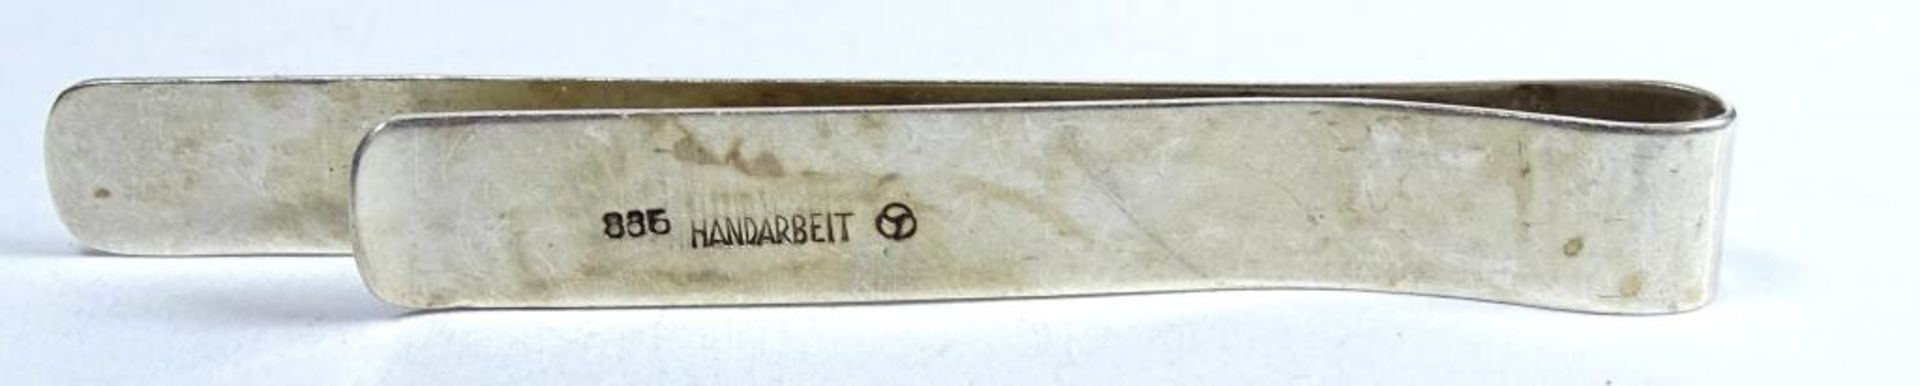 Krawattenklammer,Silber -835- Handarbeit,L-6,8cm, 5,9gr. - Bild 3 aus 3